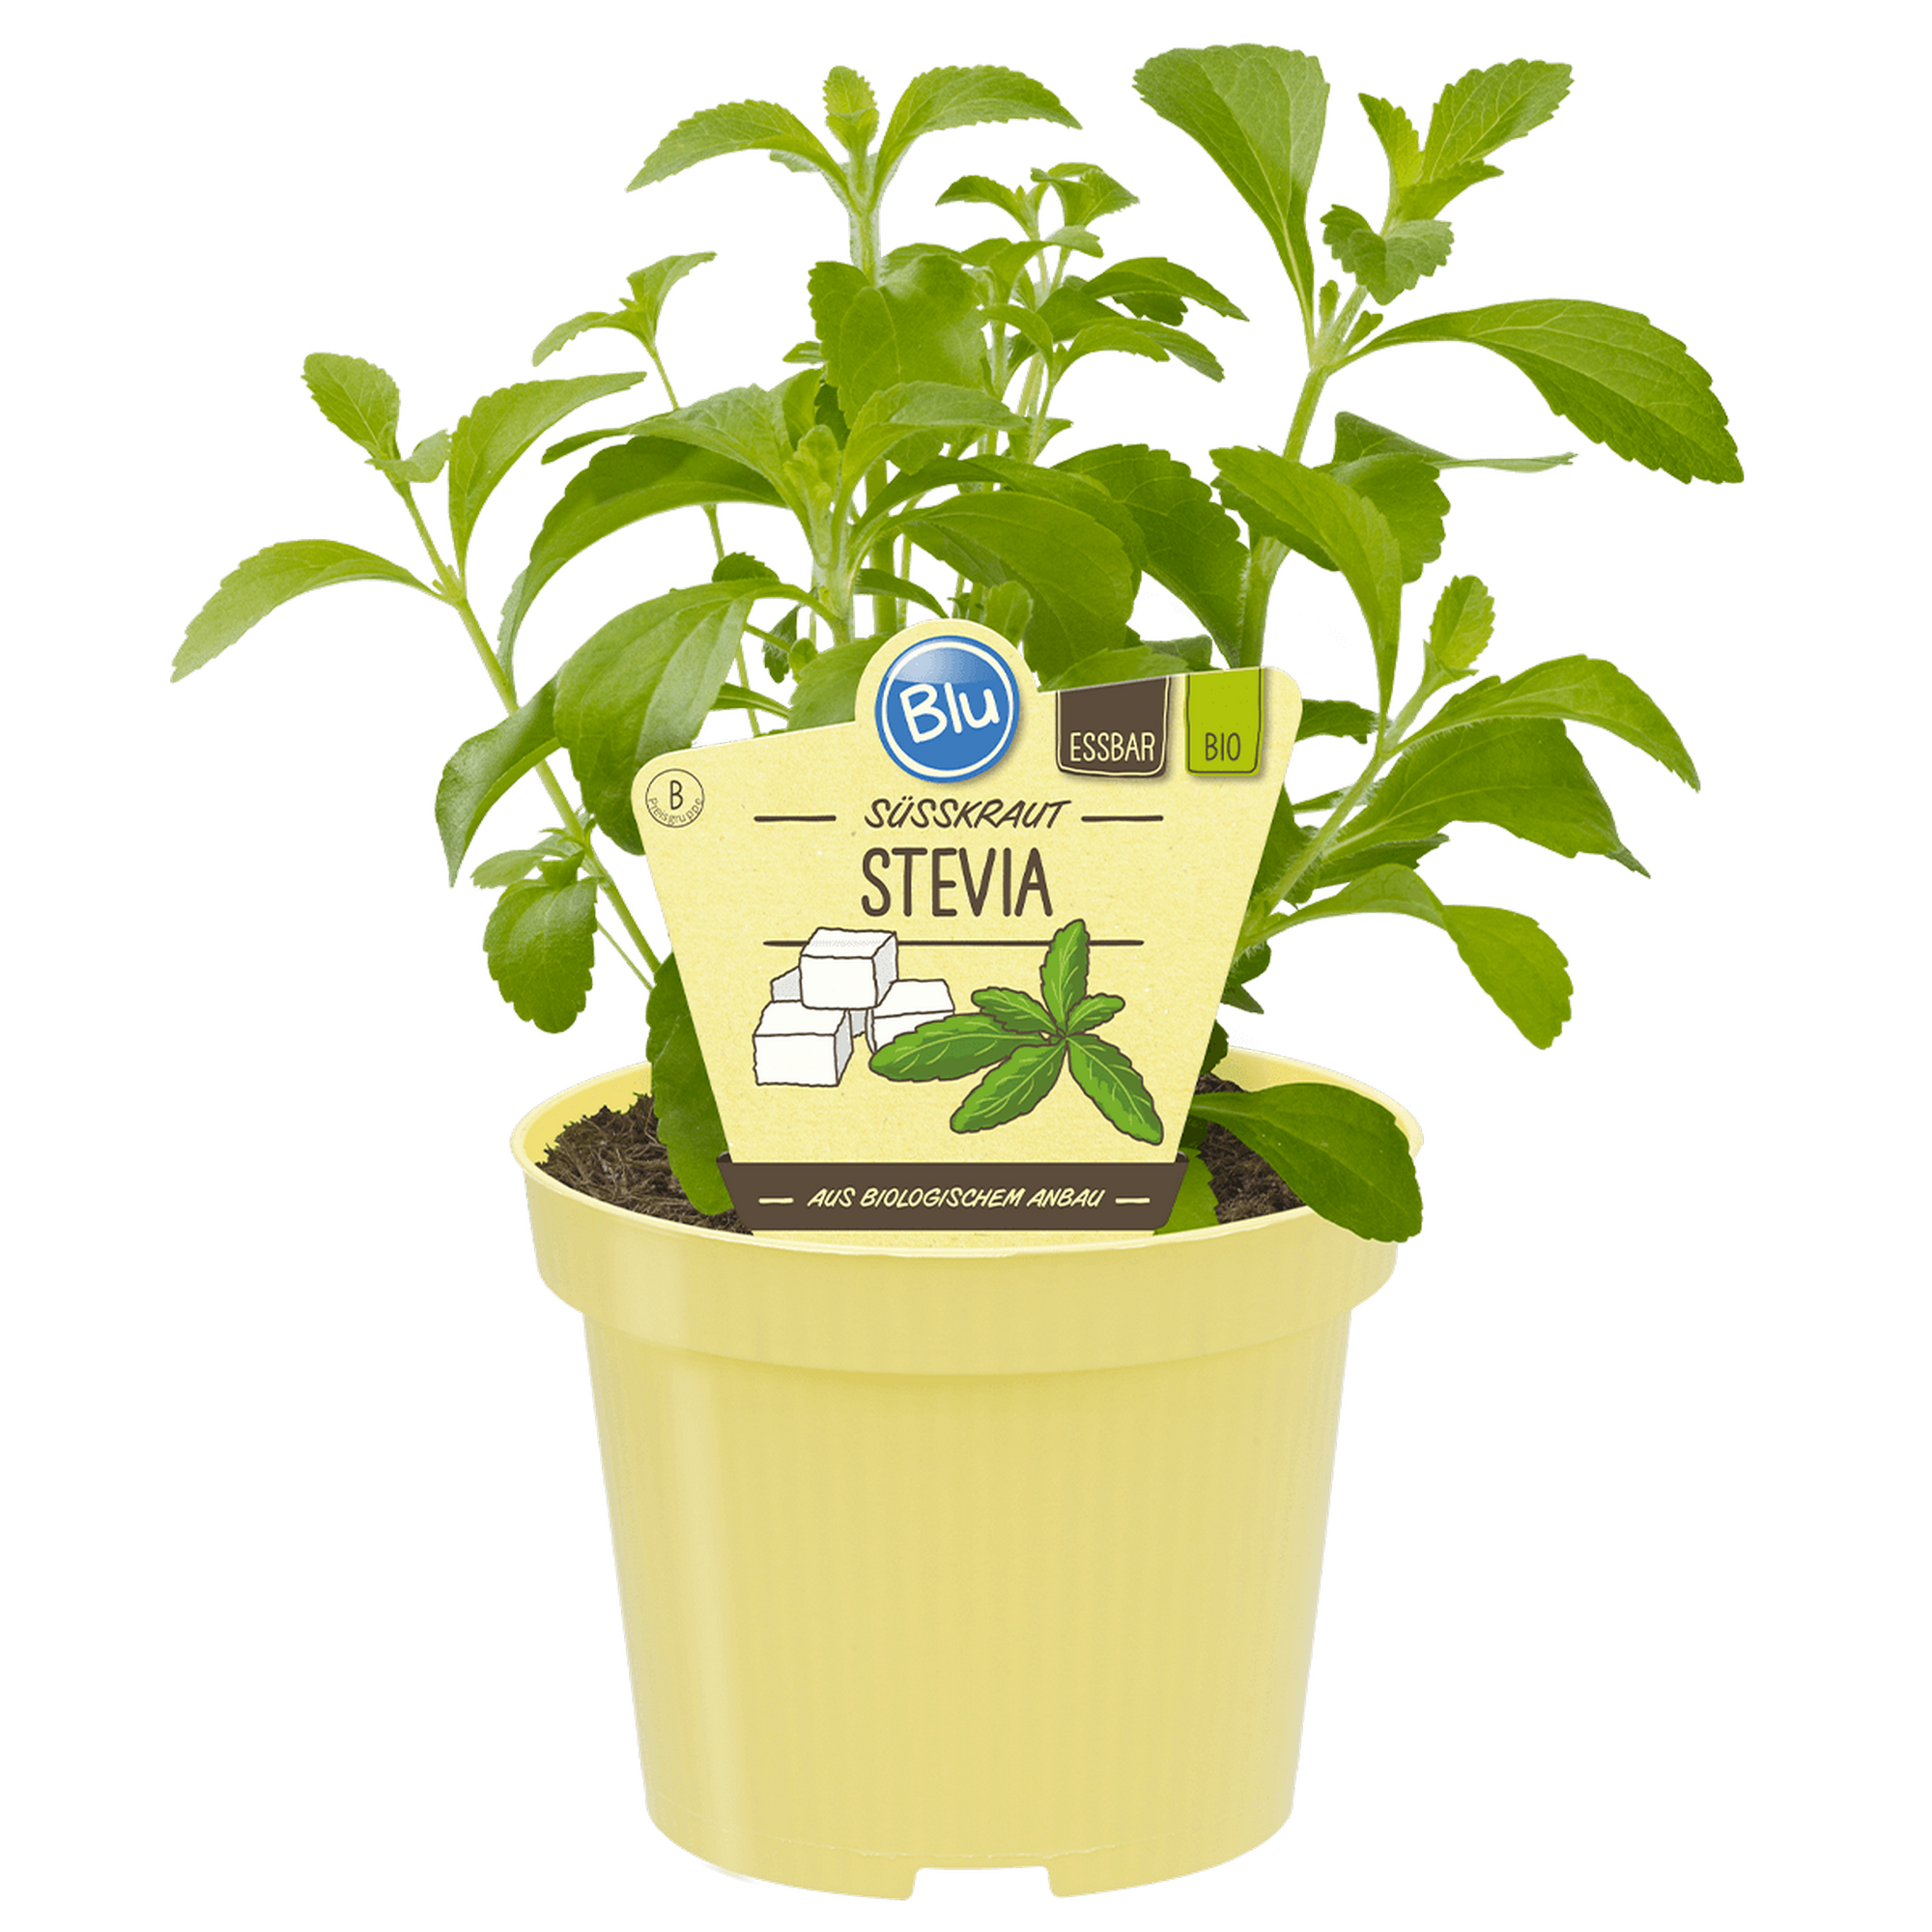 Bio-Süßkraut Stevia 12 cm Topf + product picture